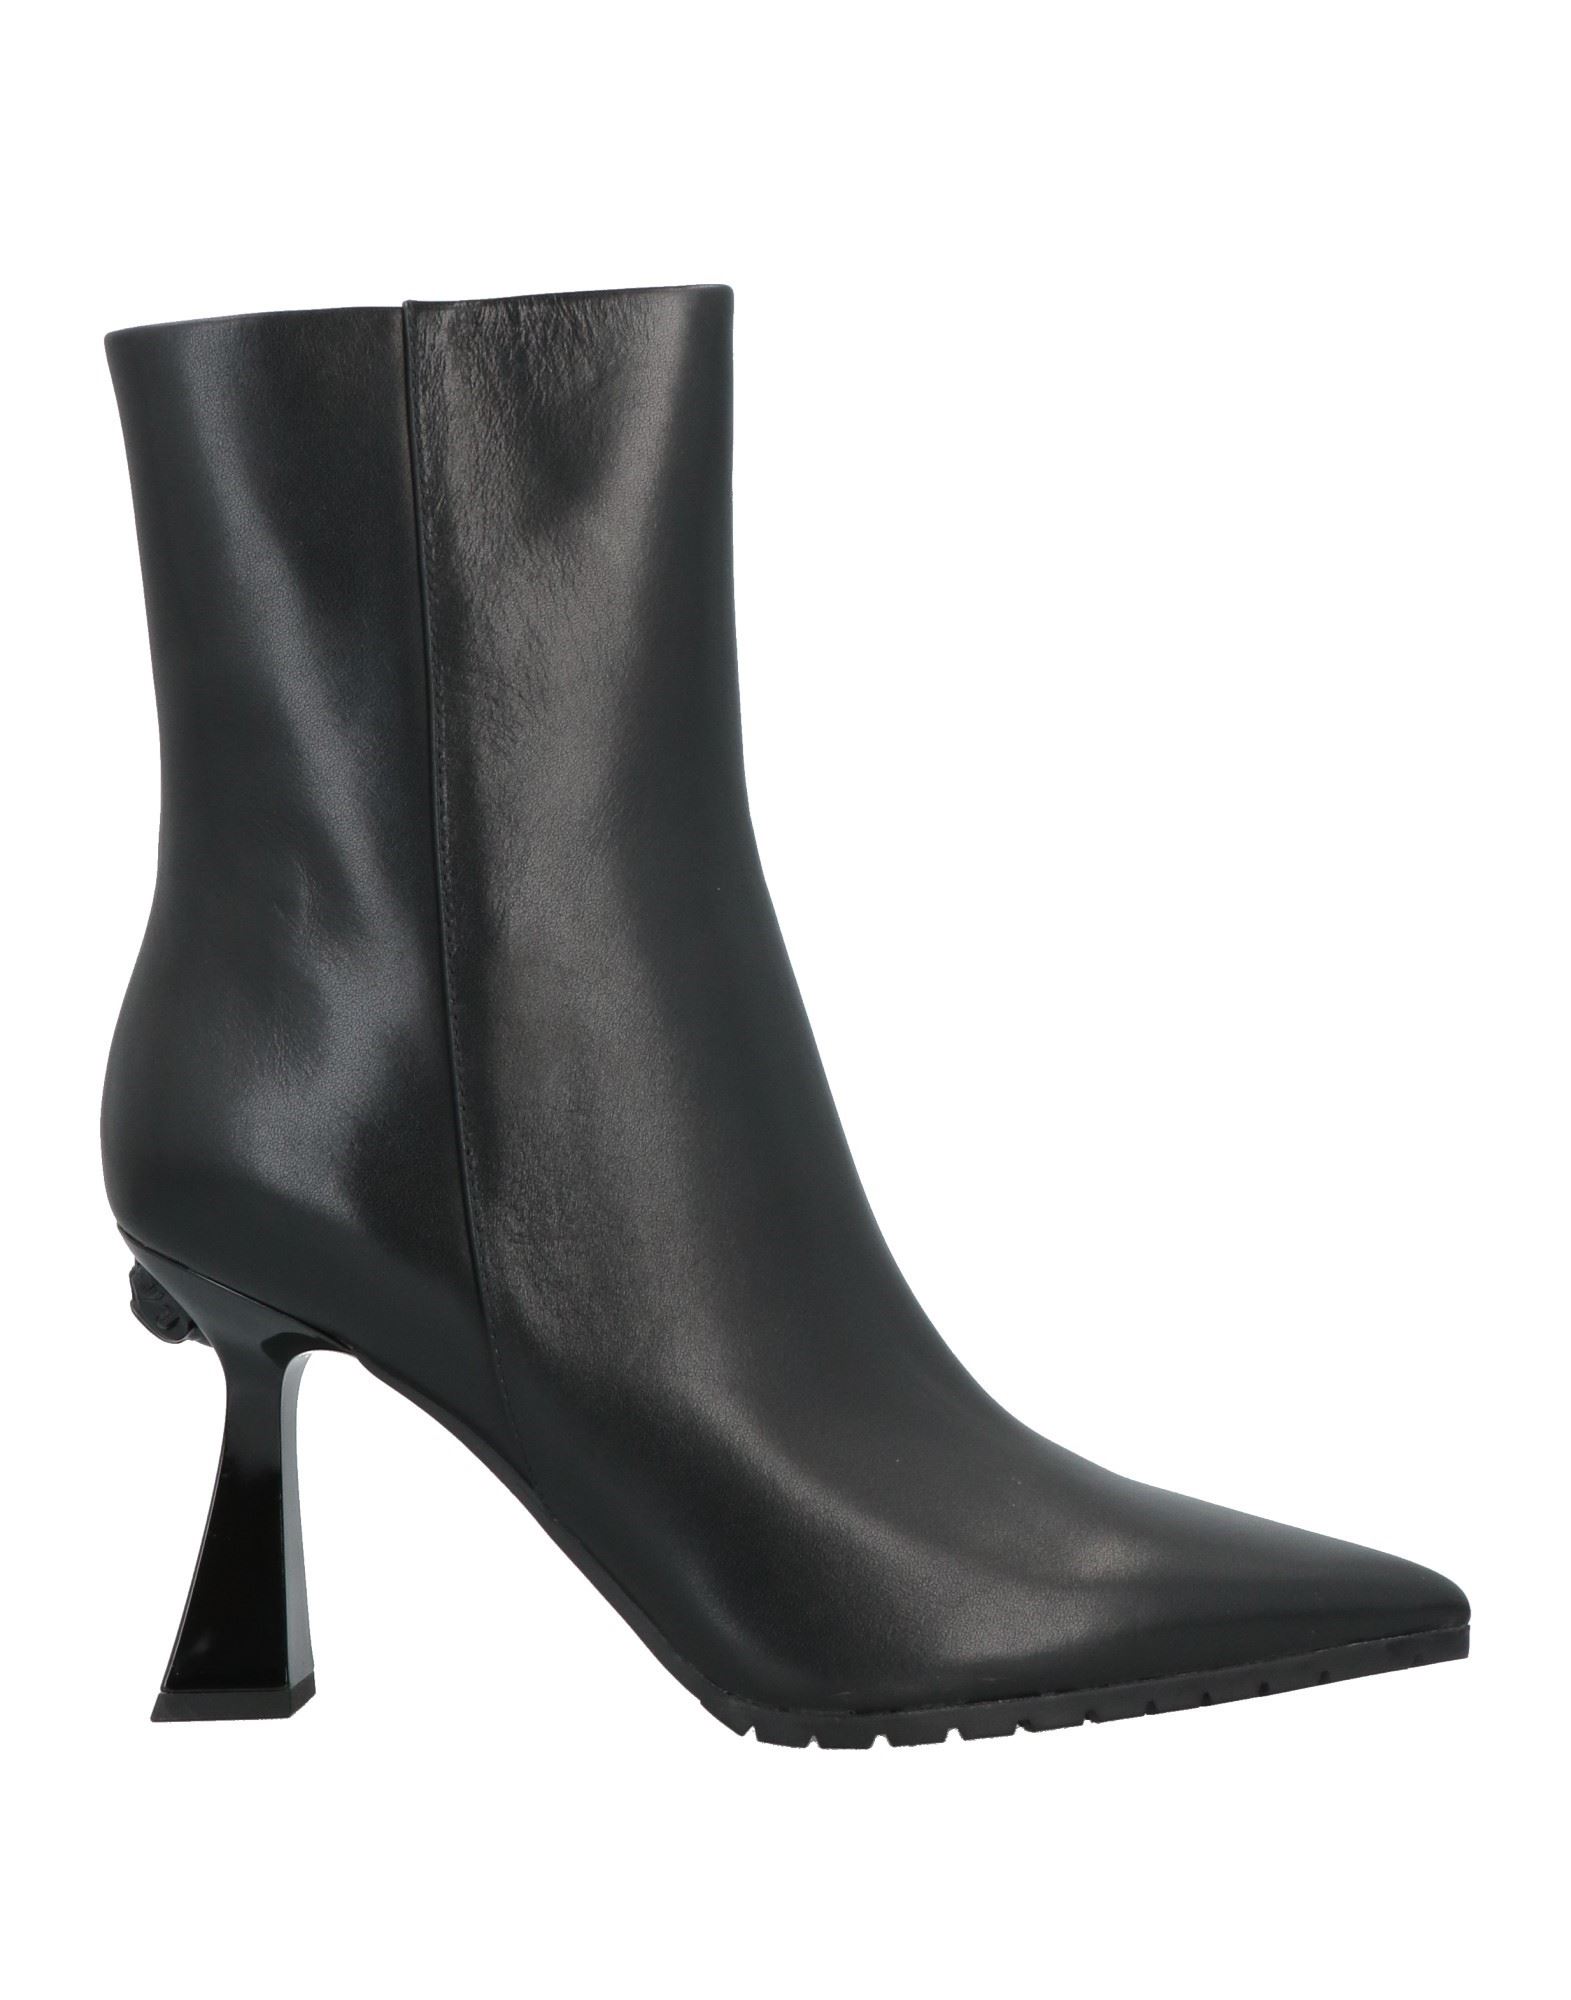 Shop Kurt Geiger Woman Ankle Boots Black Size 7.5 Soft Leather